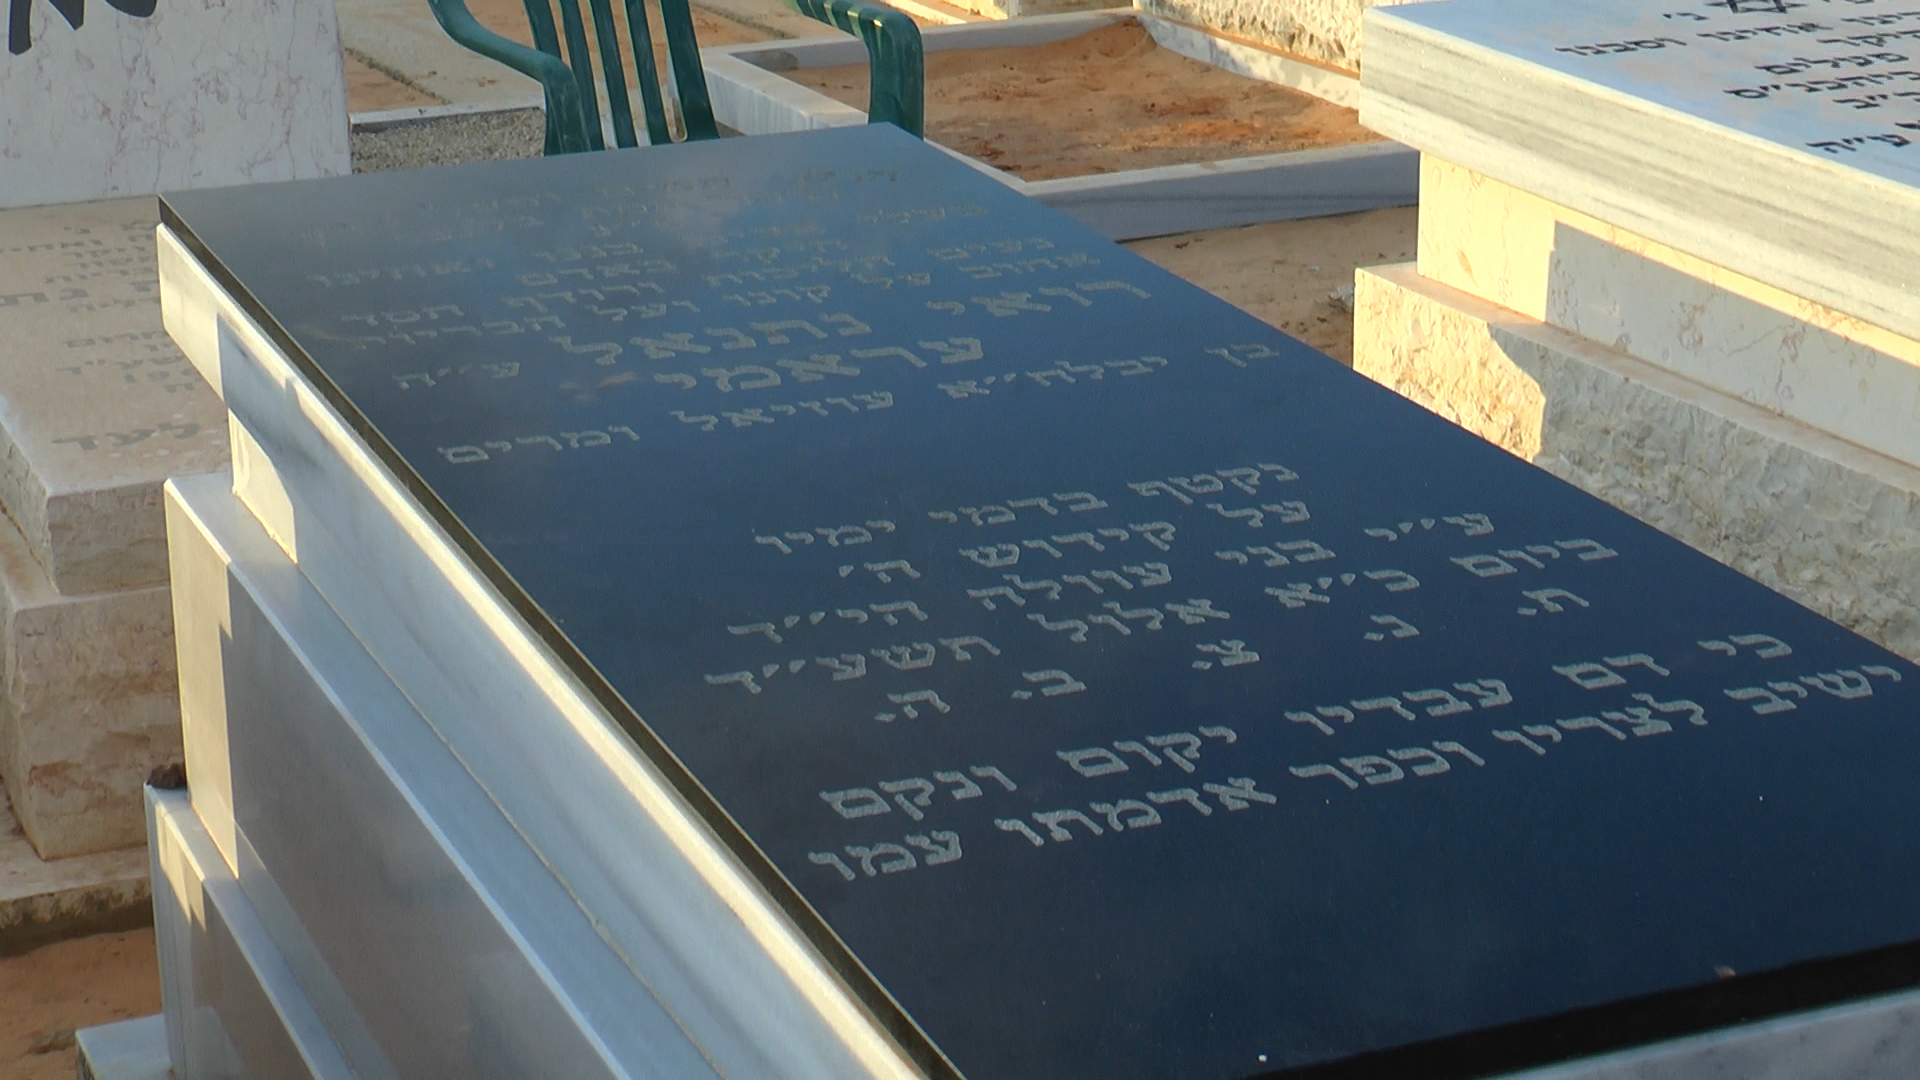 קברו של נתנאל עראמי הי"ד (יהודה פרל)